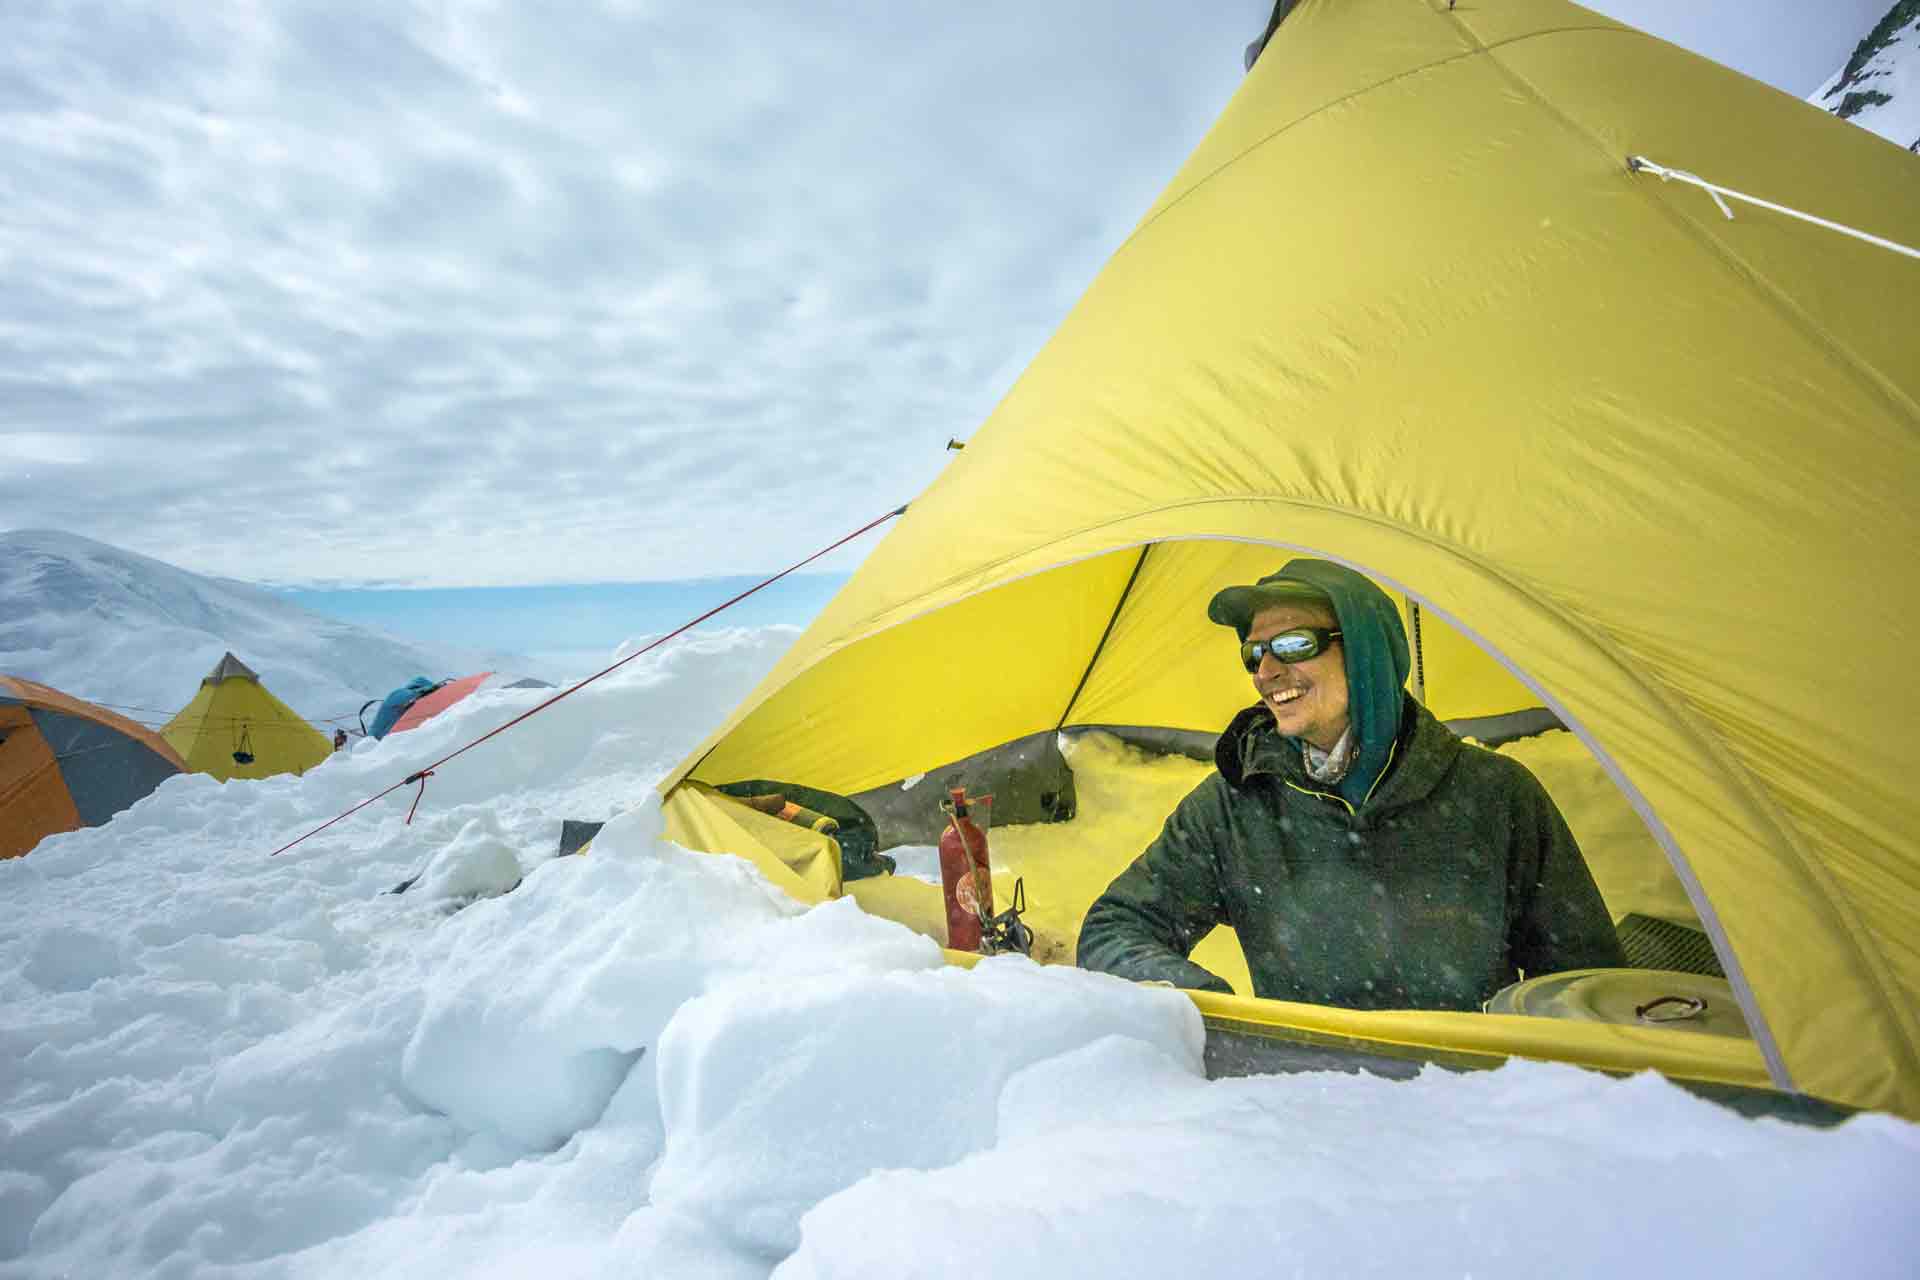 Denali 6190 m, toit de l'Amérique du Nord - Blog Expeditions Unlimited